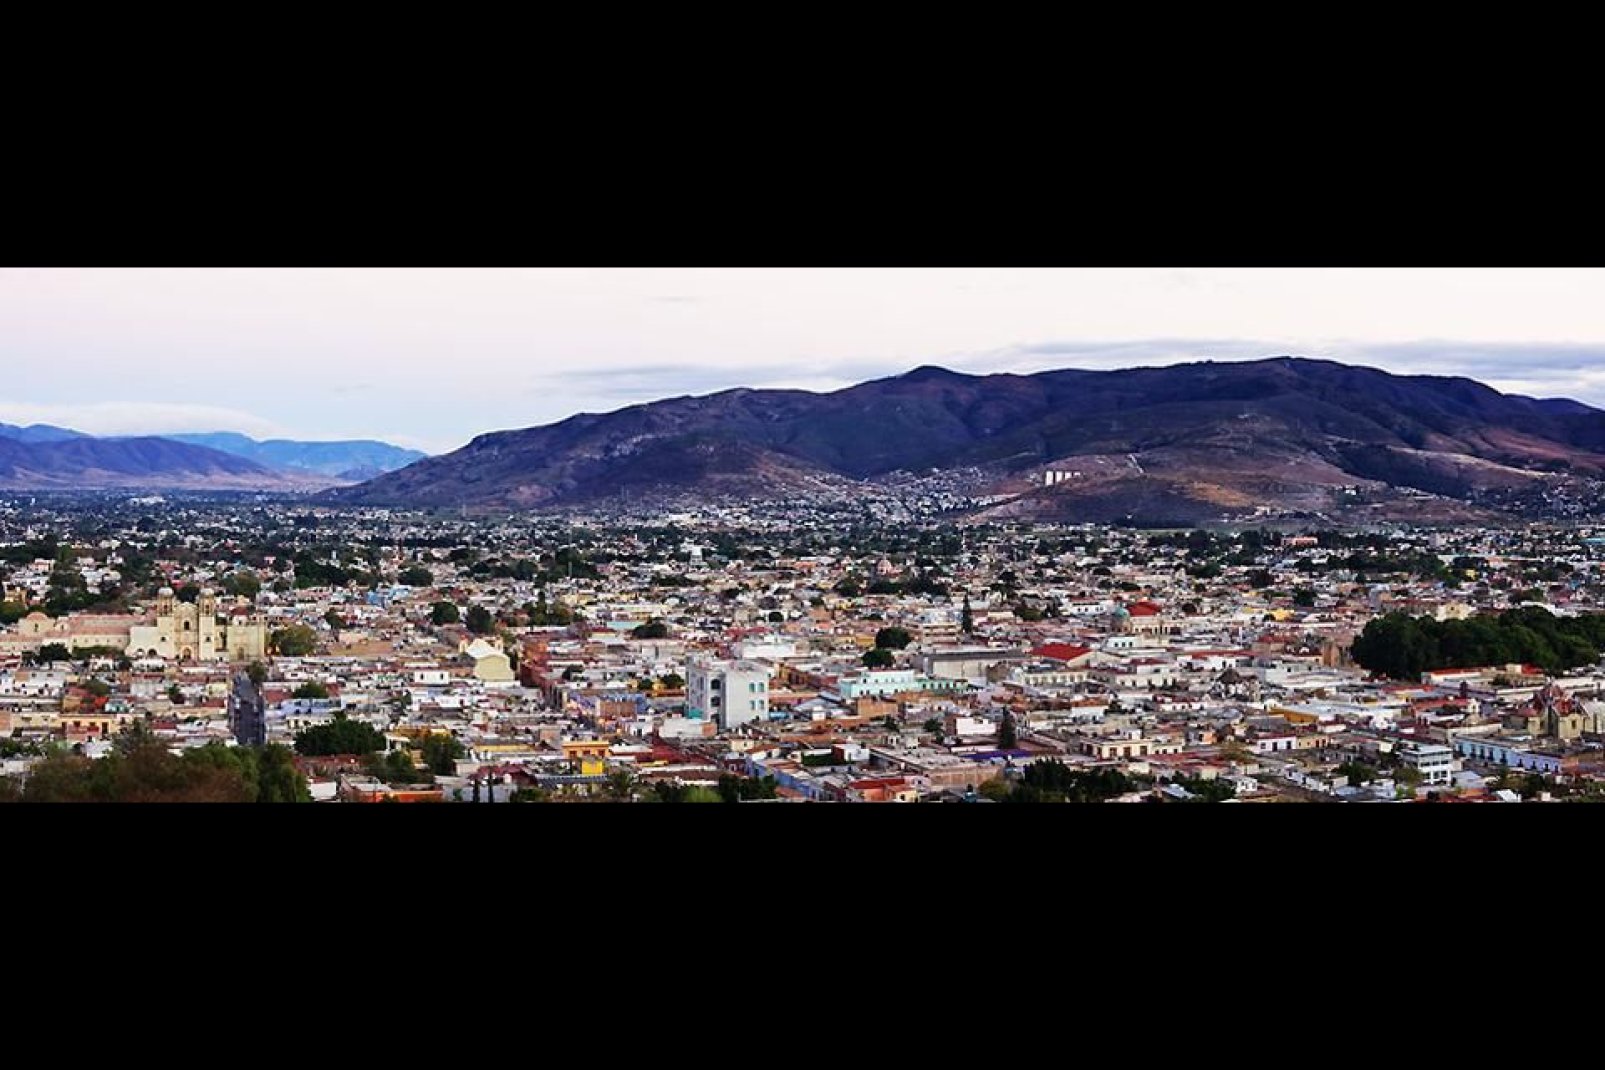 Oaxaca sorge ad un altitudine di 1550 metri ed è collocata nella valle Oaxaca nella Sierra Madre del Sud.